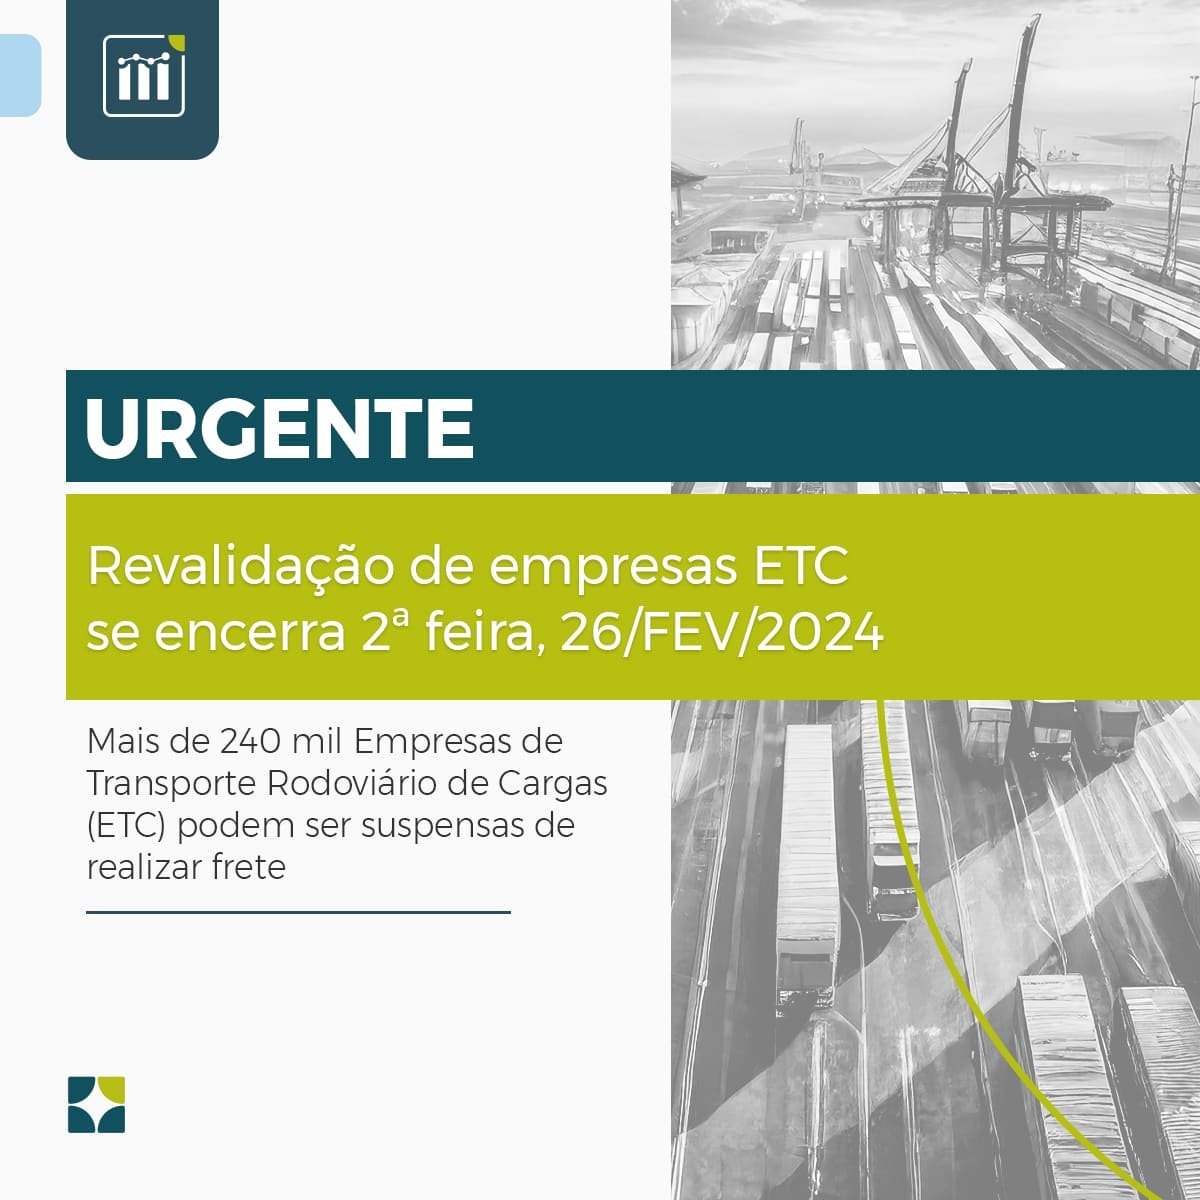 Mais de 240 mil Empresas de Transporte Rodoviário de Cargas (ETC) podem ser suspensas de realizar frete